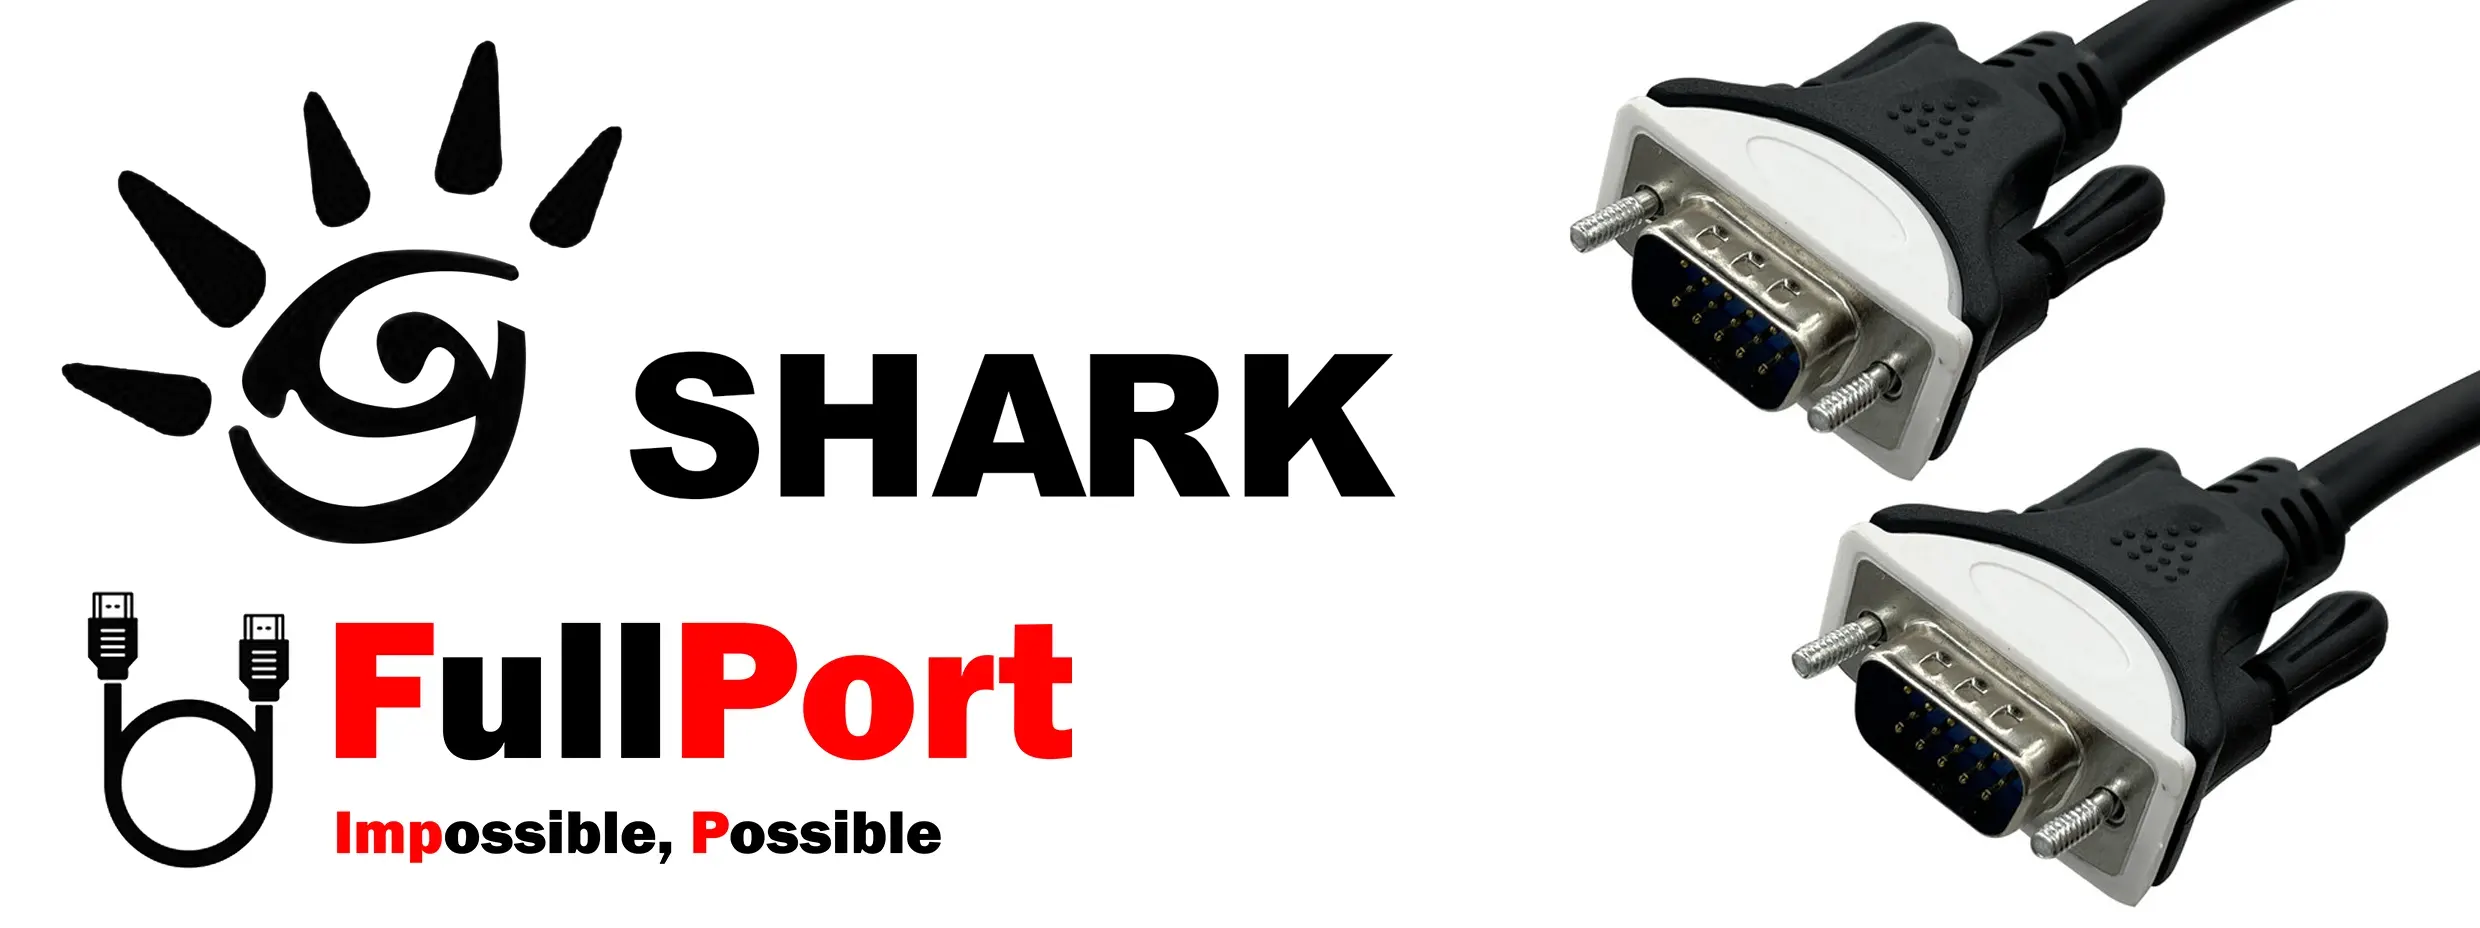 خرید اینترنتی کابل مانیتور VGA برند شارک | SHARK با گارانتی تست و تضمین اصالت کالا از فروشگاه اینترنتی فول پورت